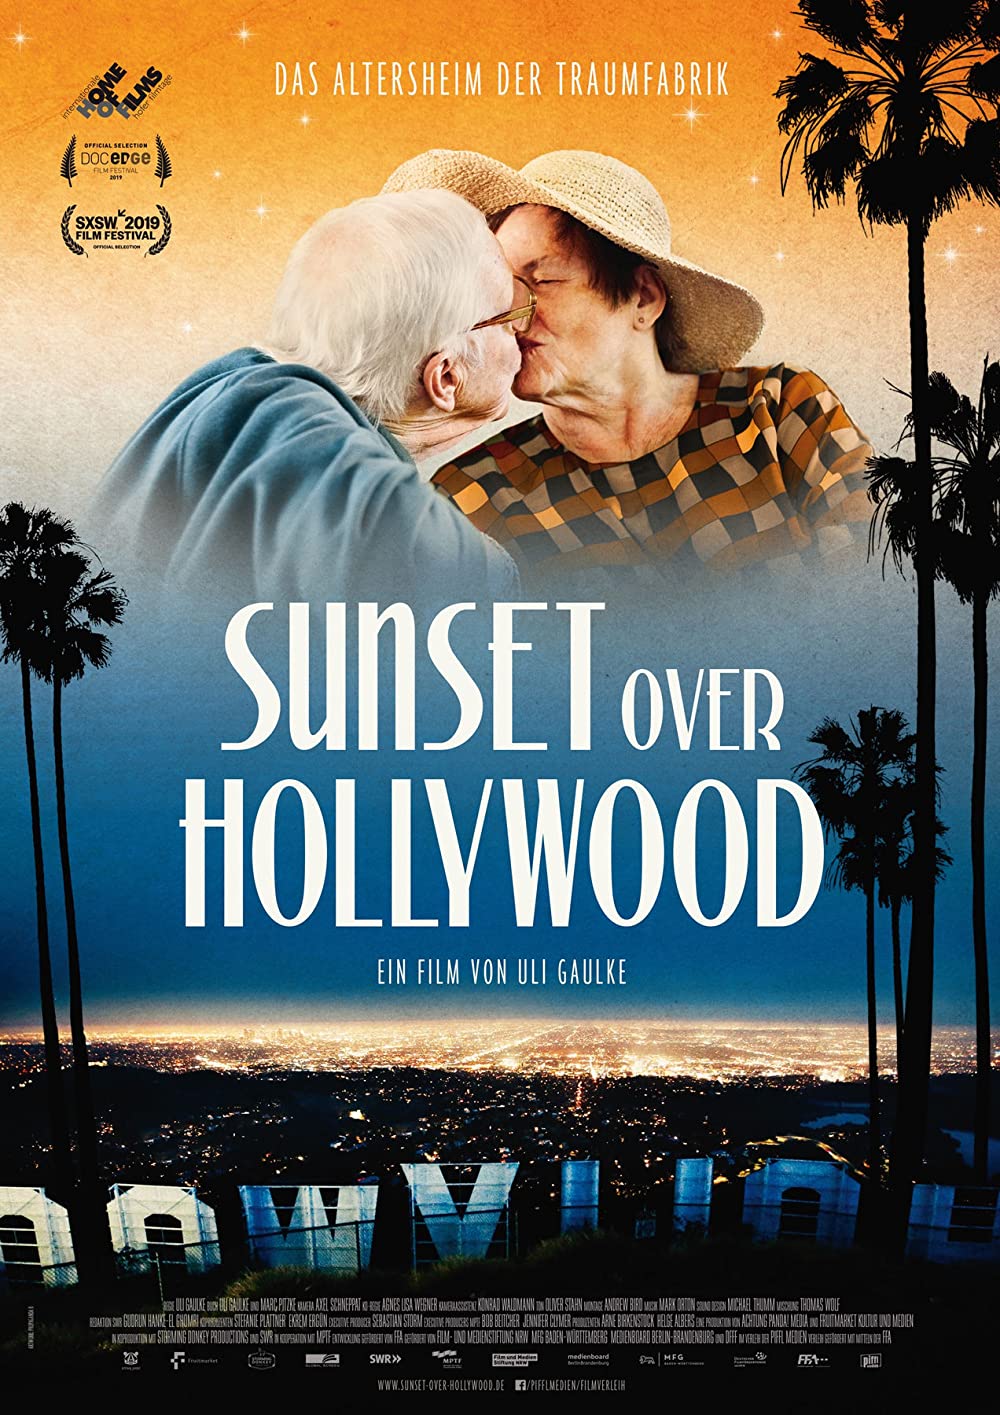 Filmbeschreibung zu Sunset over Hollywood